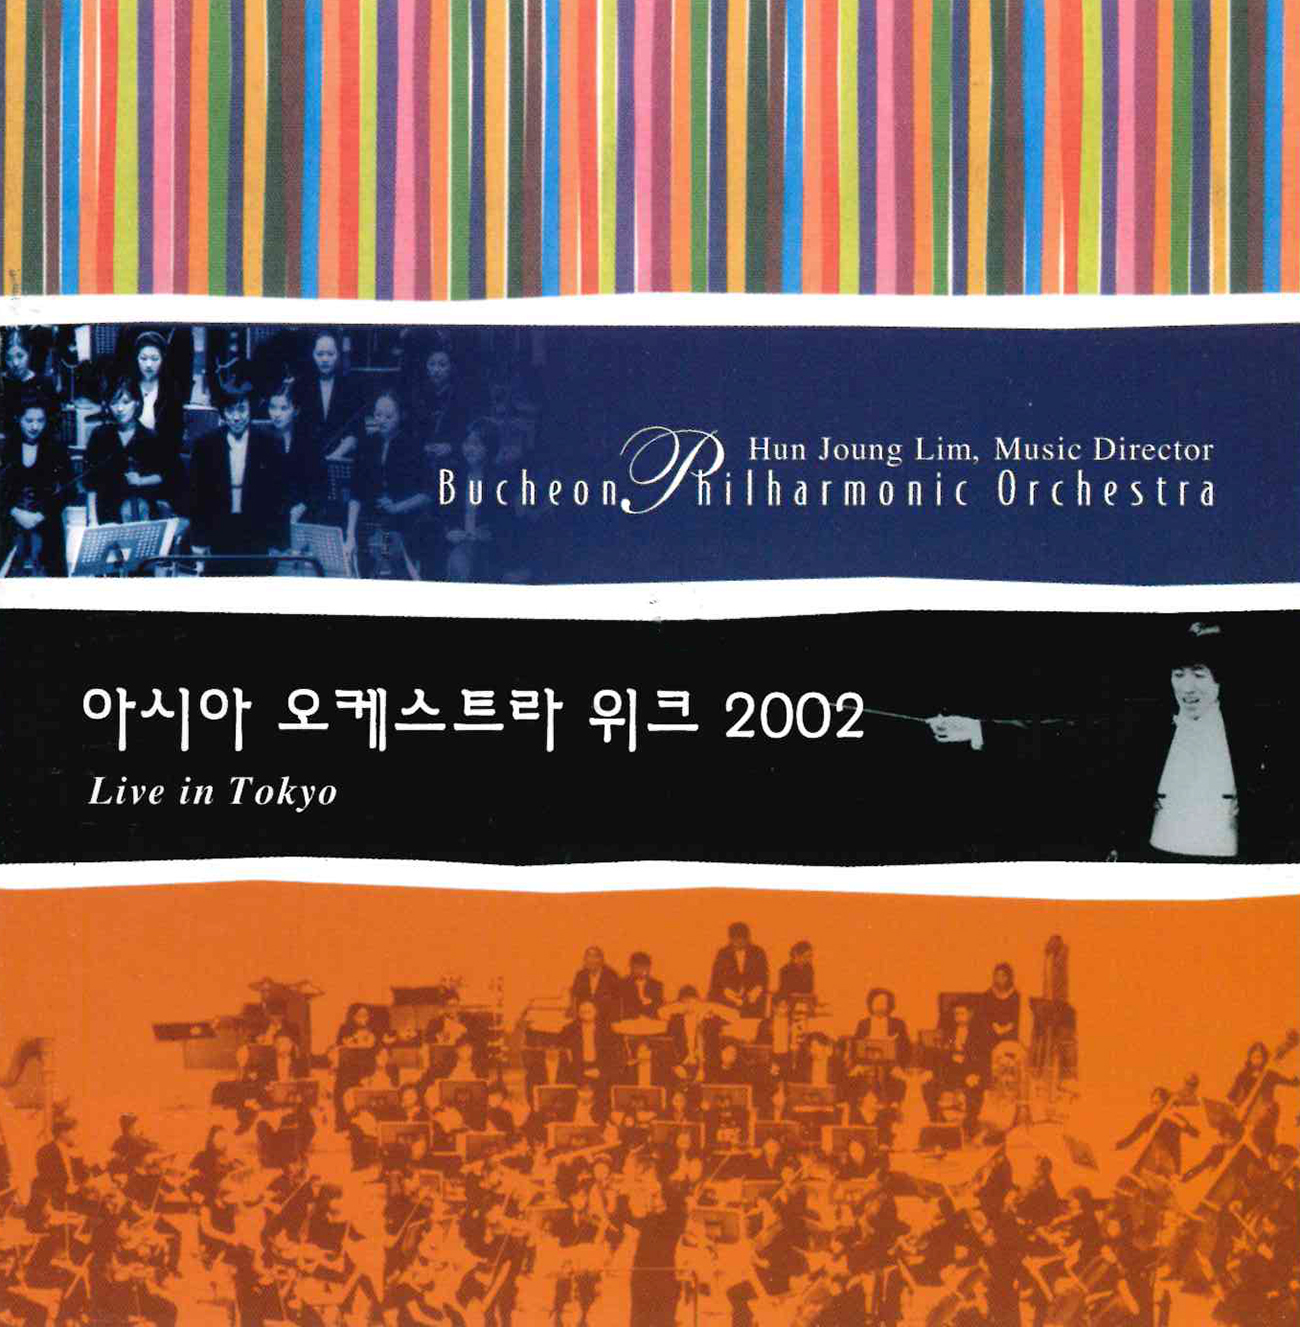 아시아 오케스트라 위크 2002 연주 실황: 베를리오즈, 환상 교향곡 외